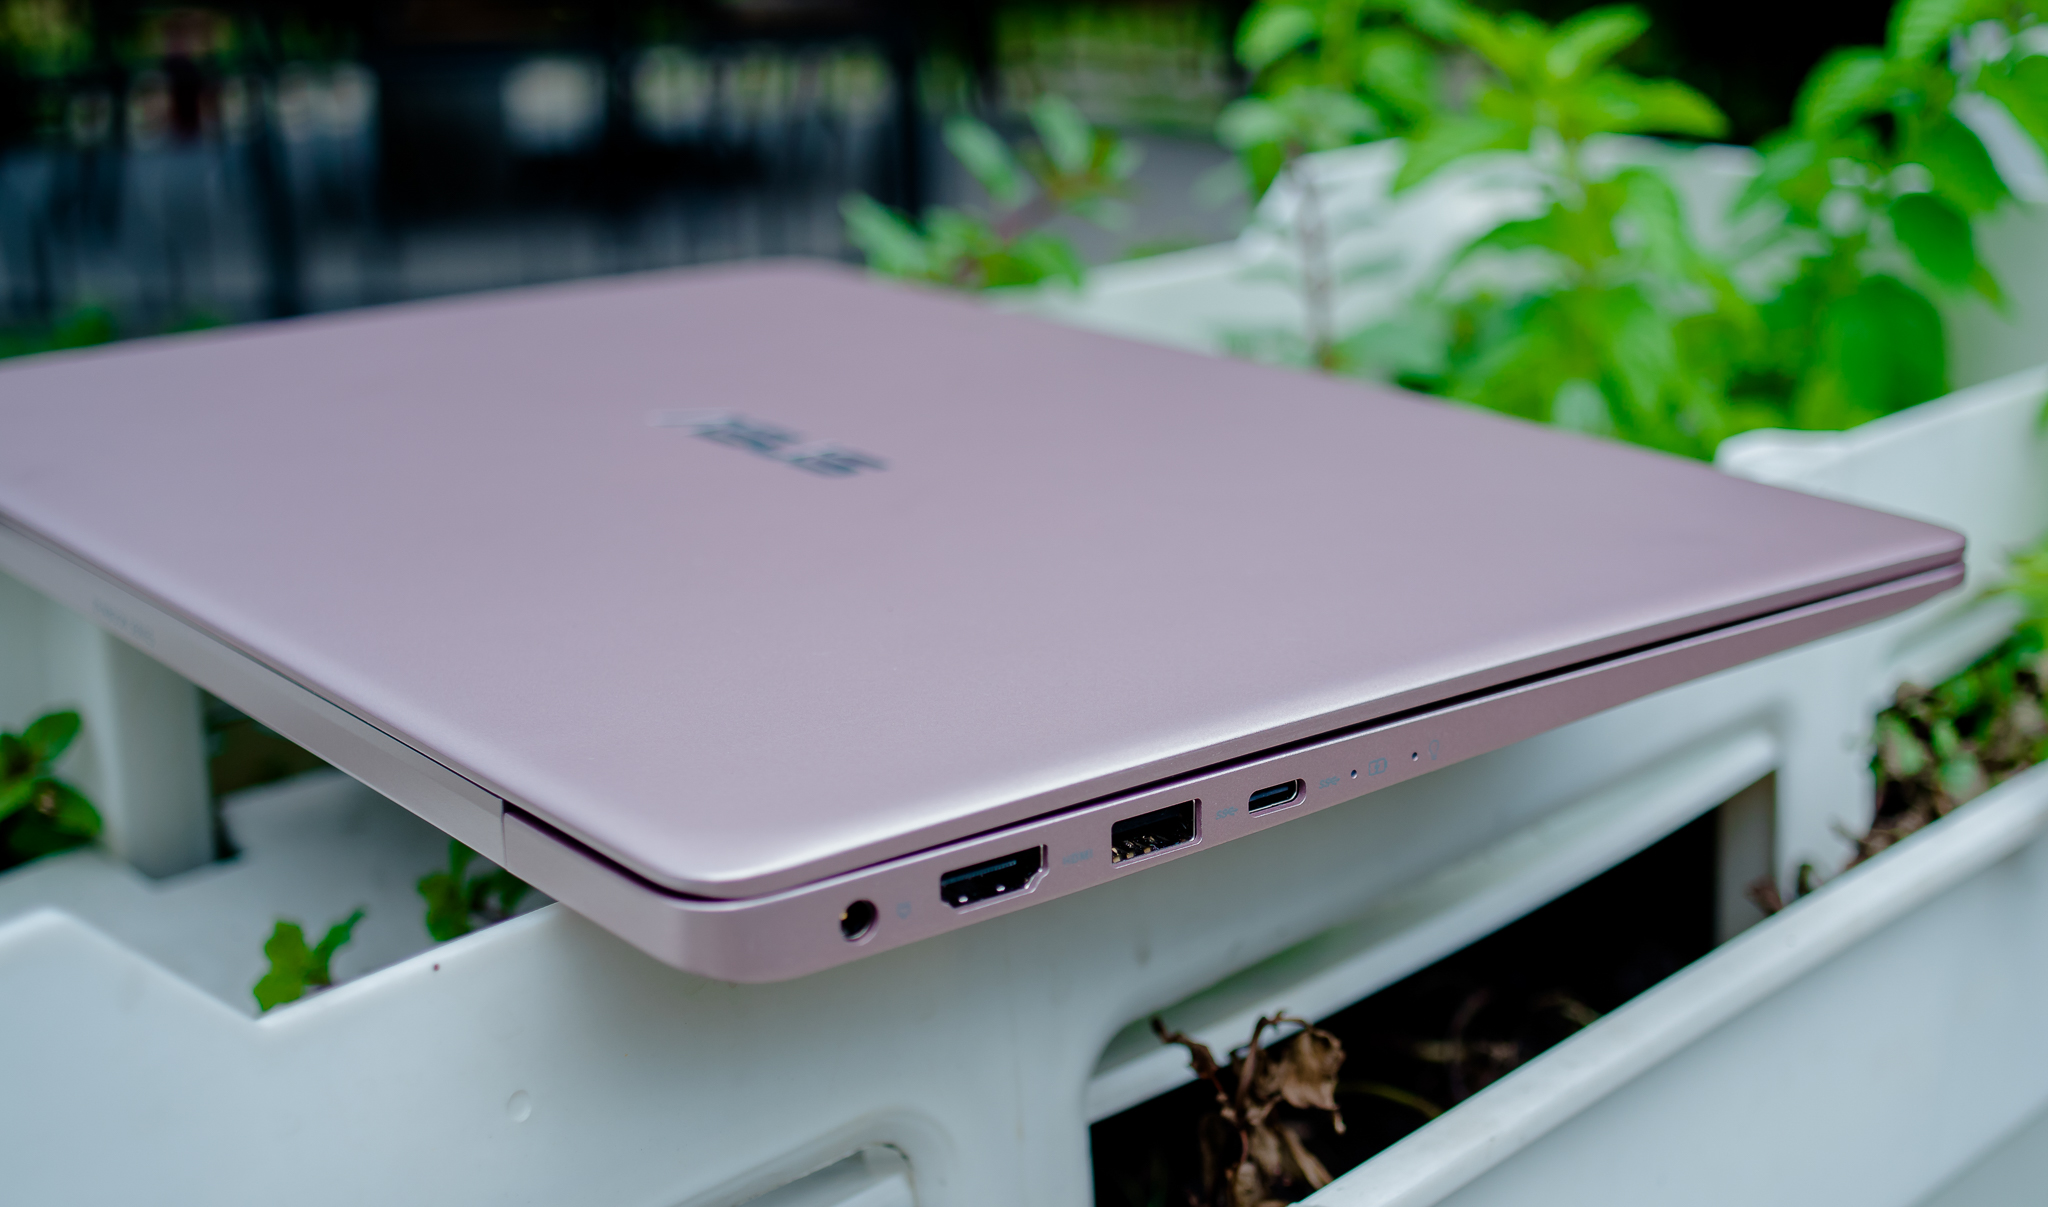 Trên tay ASUS ZenBook 13 UX331UAL: Nhẹ 985g, CPU thế hệ thứ 8, pin 15 tiếng